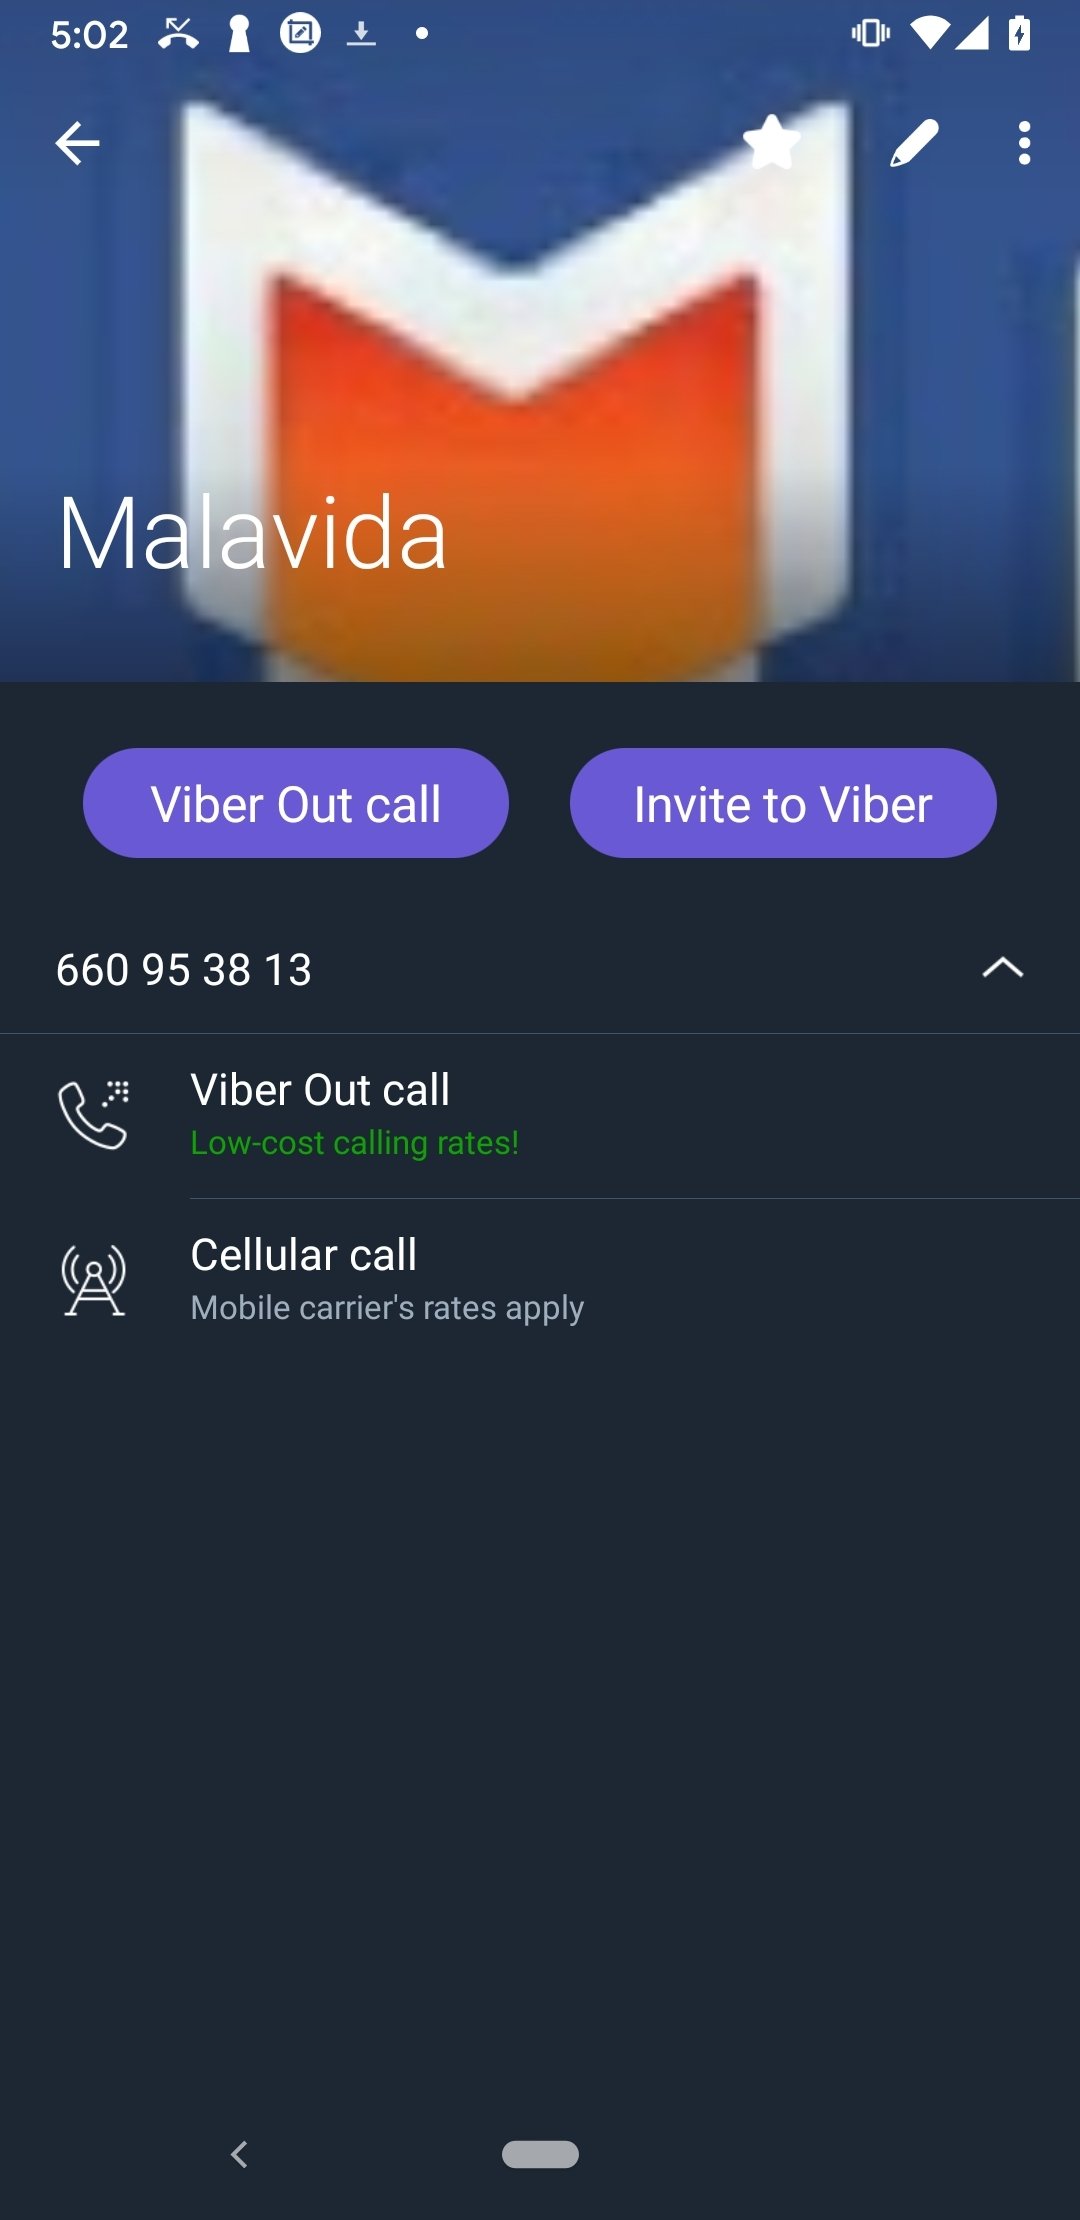 viber messenger download for pc